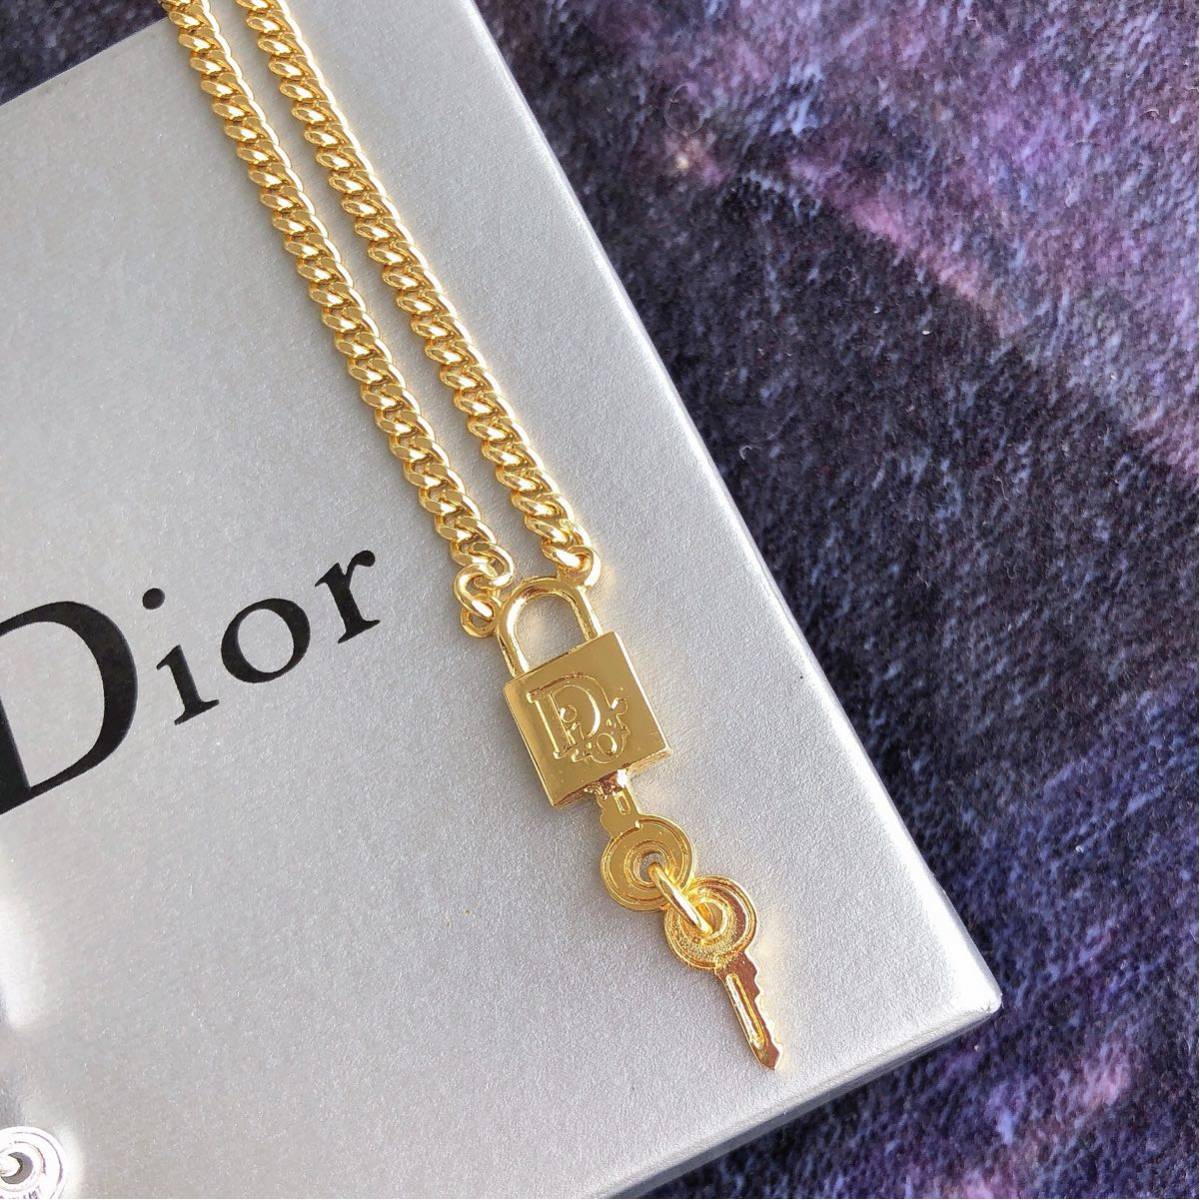 Christian Dior クリスチャンディオール カギ 鍵 南京錠 カデナ ネックレス ゴールド ブレスレット シルバー セット 未使用品